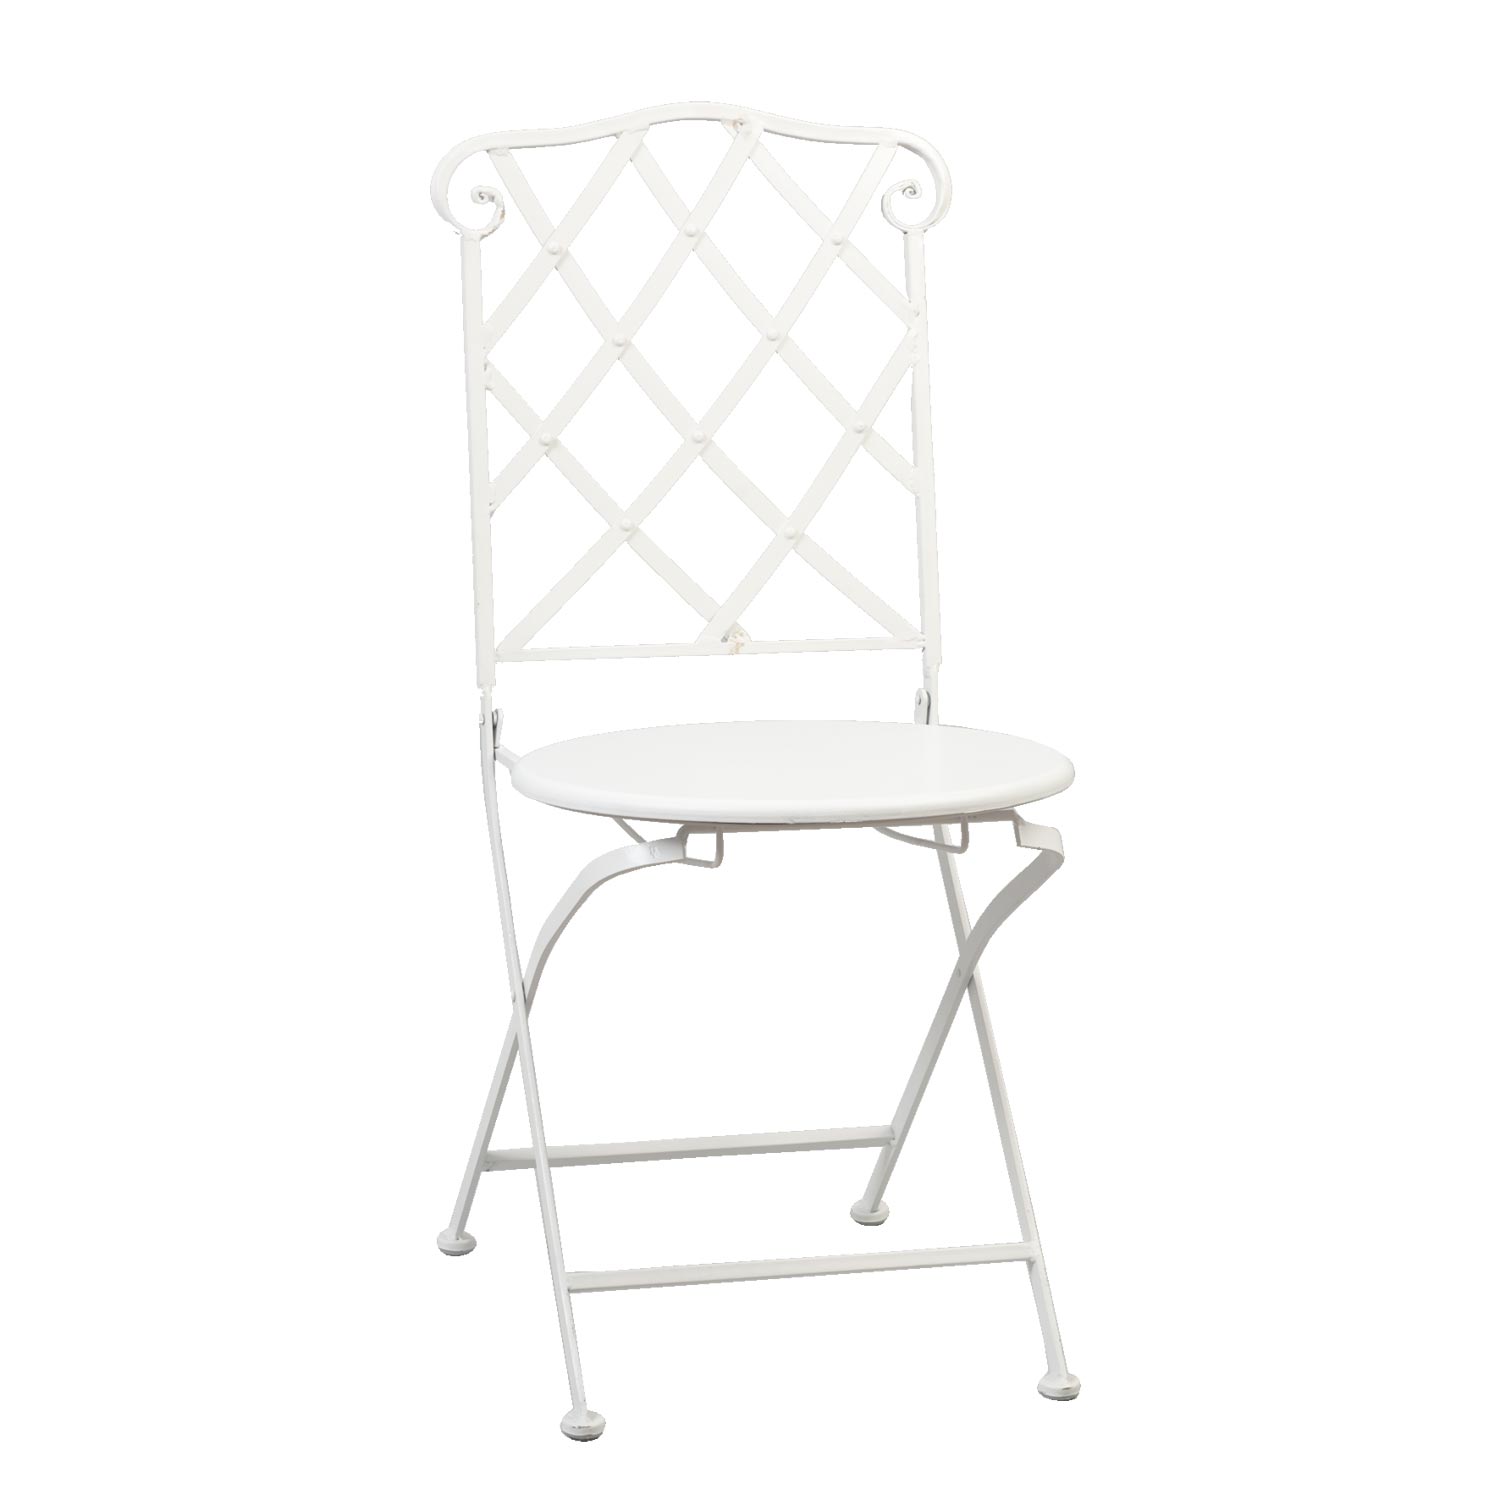 Metall-Stuhl mit runder Sitzfläche, in weiß